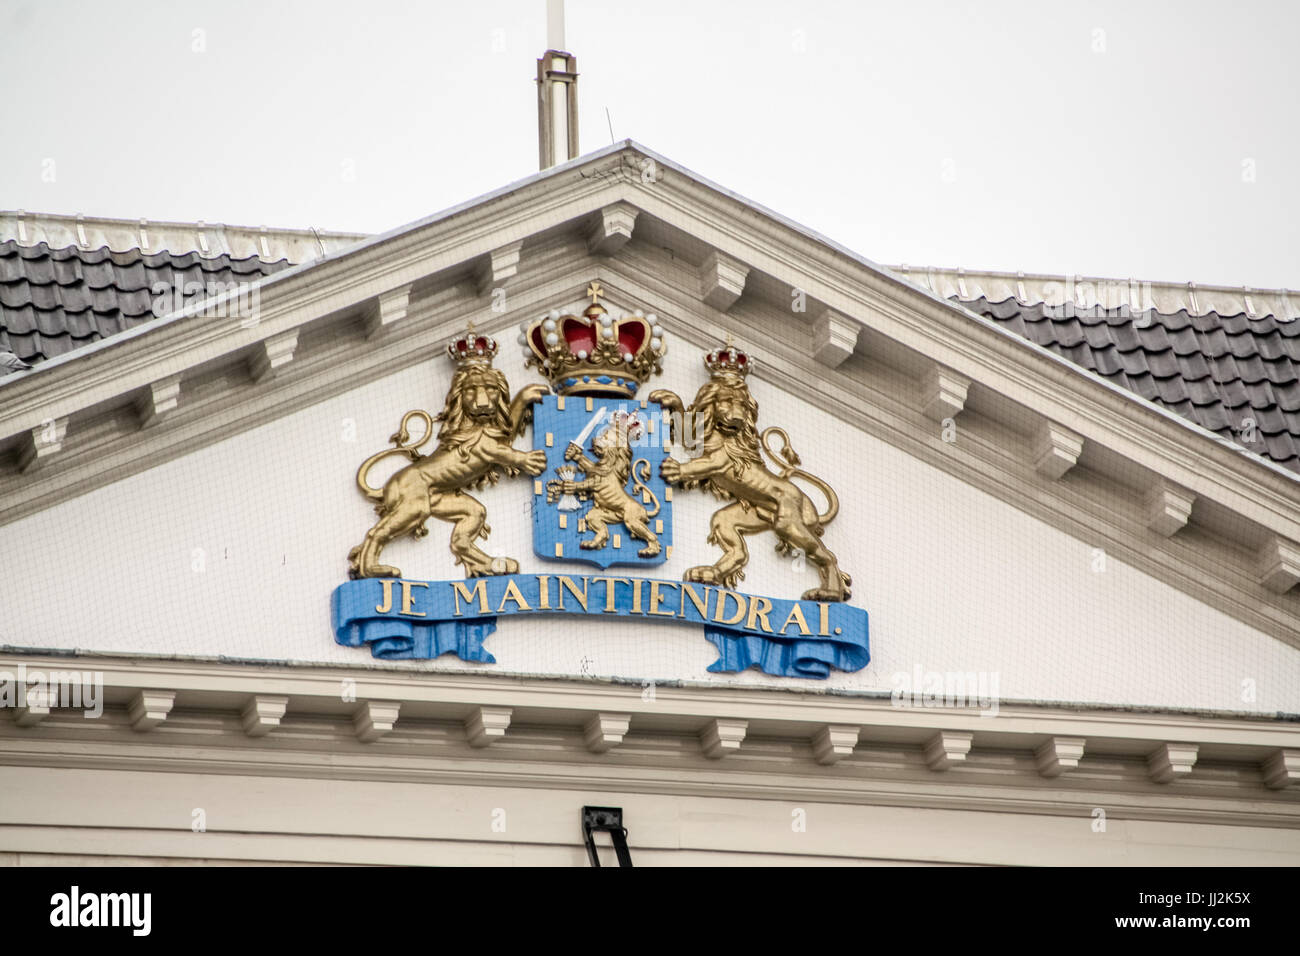 Devise sur le fronton d'un bâtiment officiel, Amsterdam, Pays-Bas - Motto  on the pediment of an official building, Amsterdam, The Netherlands Stock  Photo - Alamy